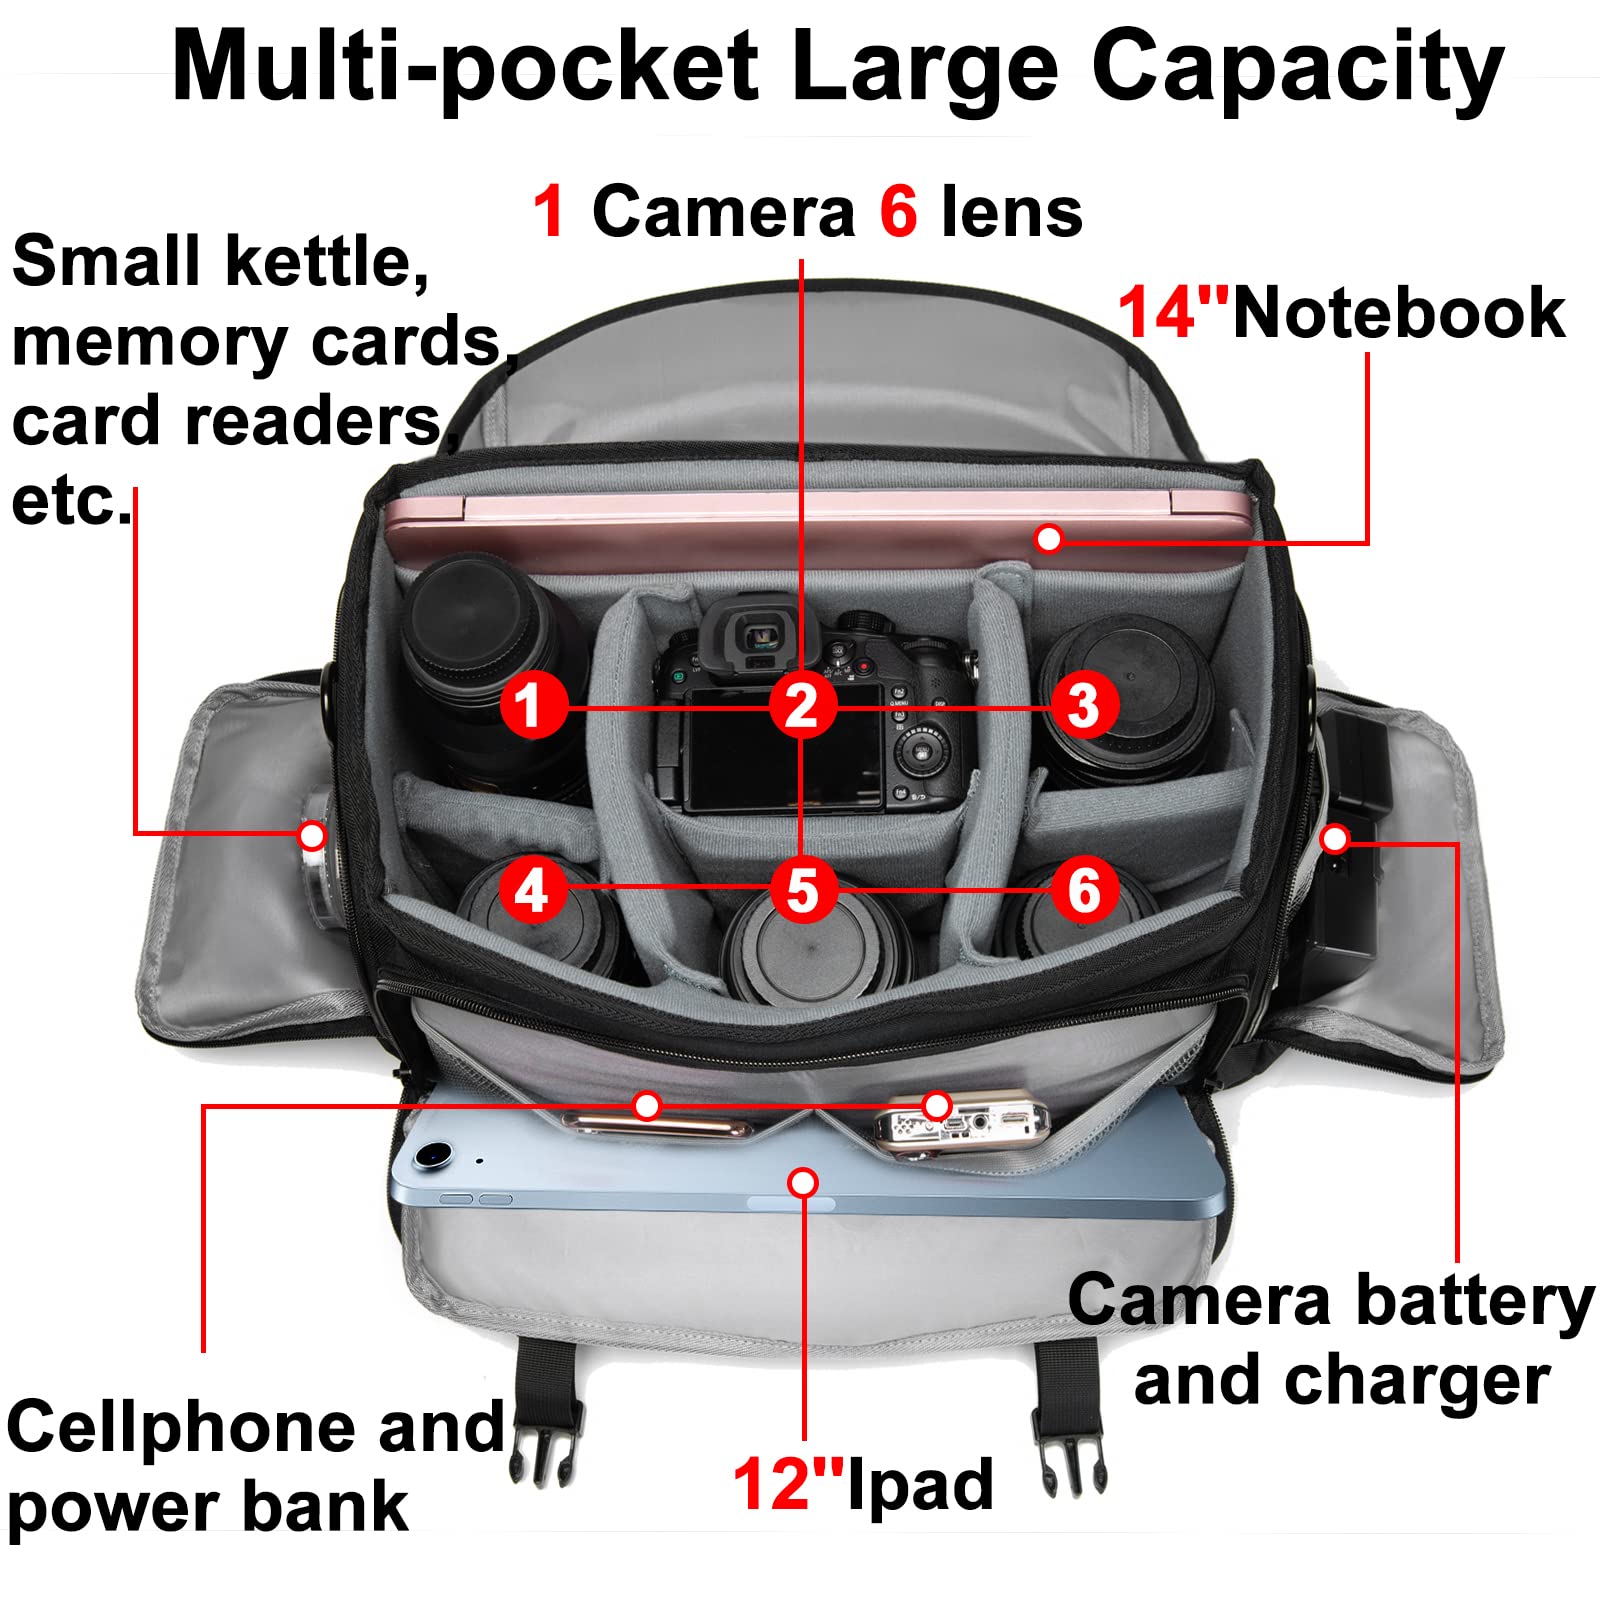 CADeN Camera Bag Case Shoulder Messenger Bag with Tripod Holder Compatible for Nikon, Canon, Sony, DSLR SLR Mirrorless Cameras Waterproof (Black, Large)